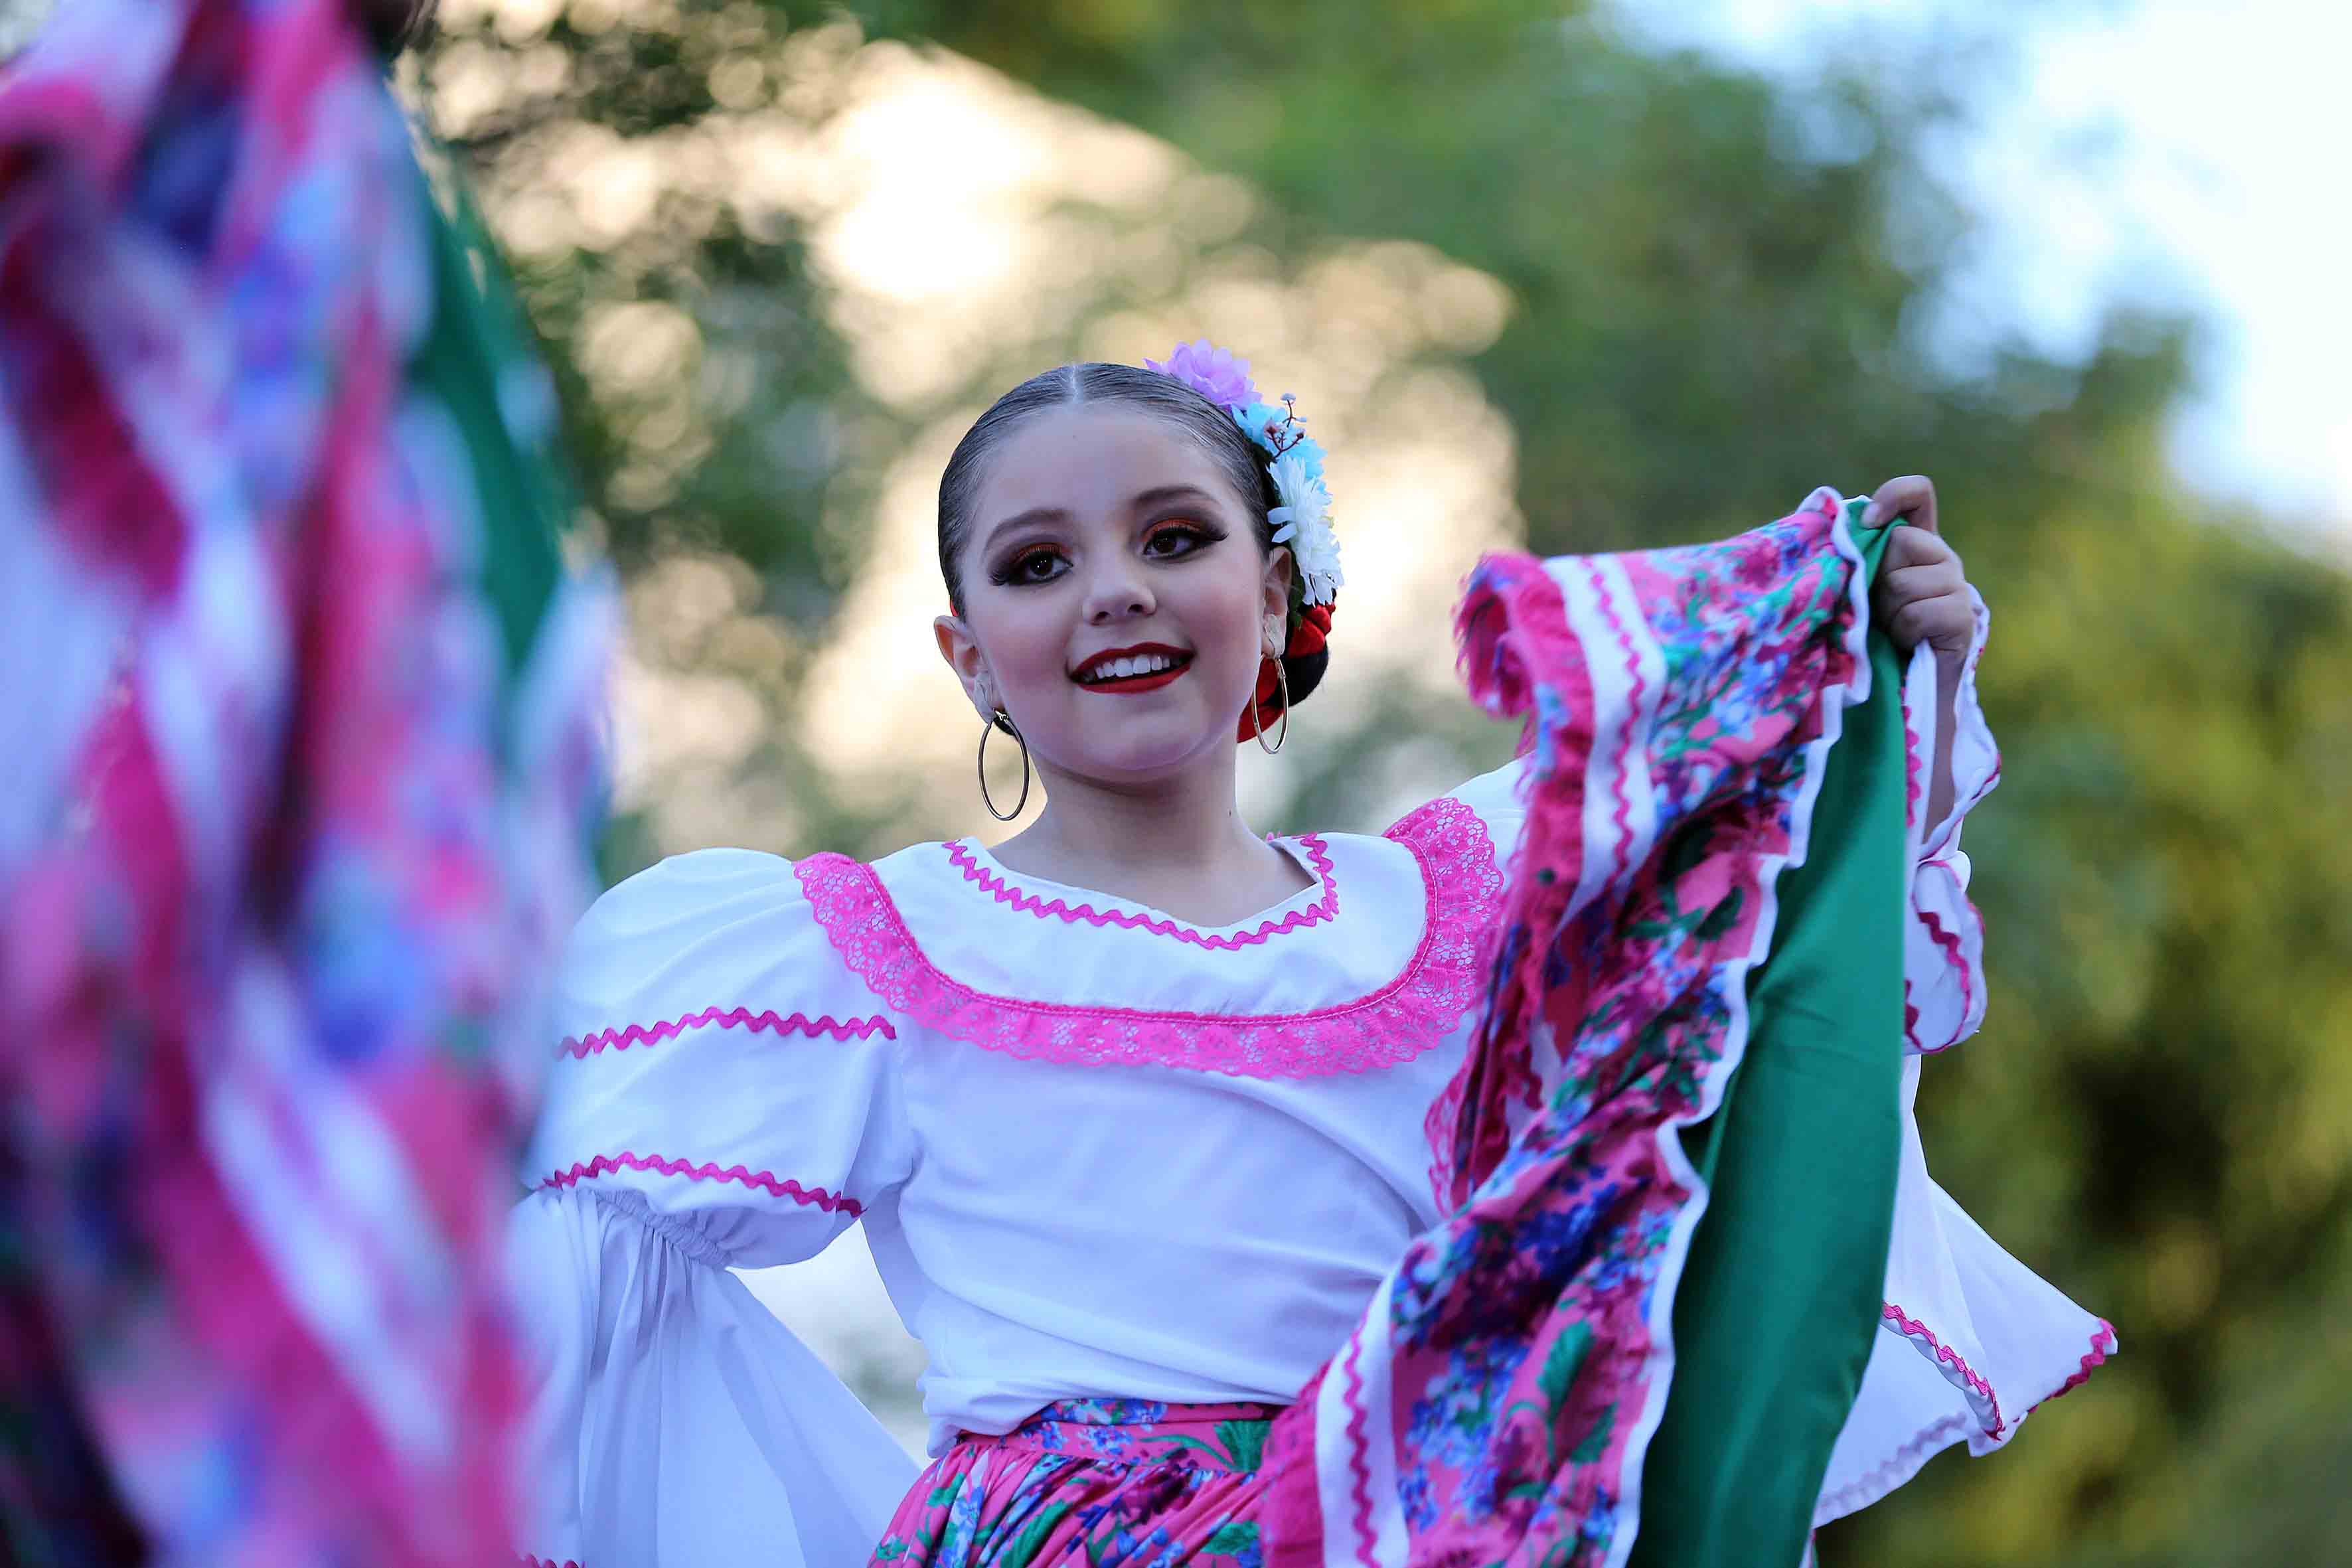 Ballet Folclórico Infantil de la UdeG celebra las fiestas patrias |  Universidad de Guadalajara